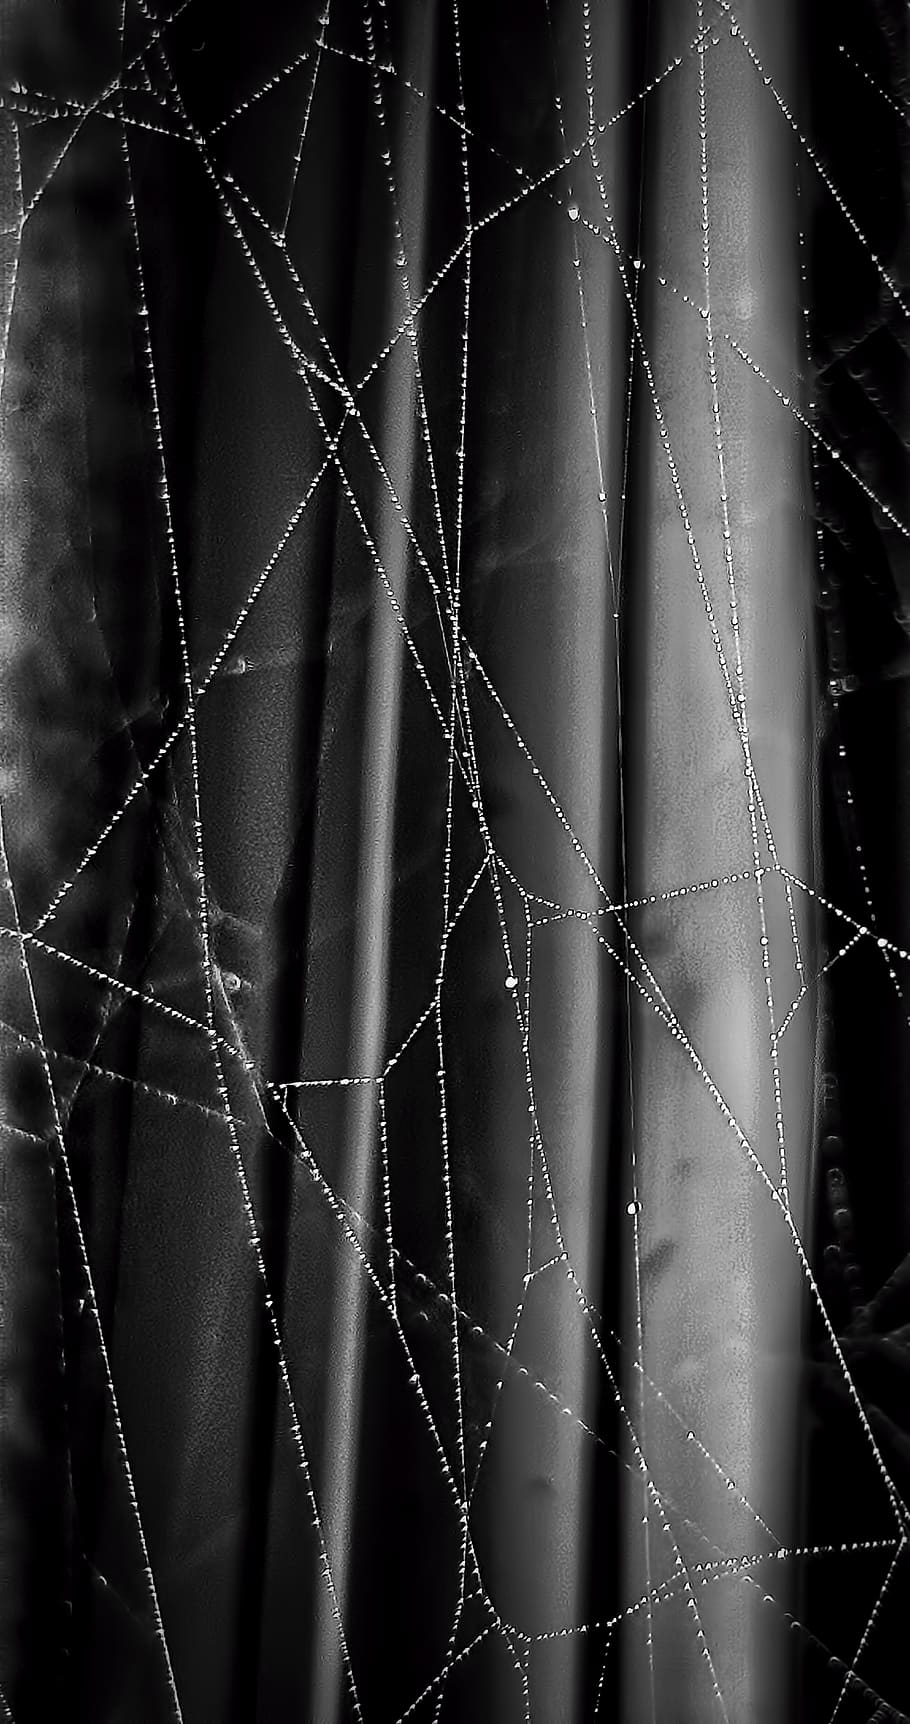 Spider web wallpaper on transparent background PNG - Similar PNG